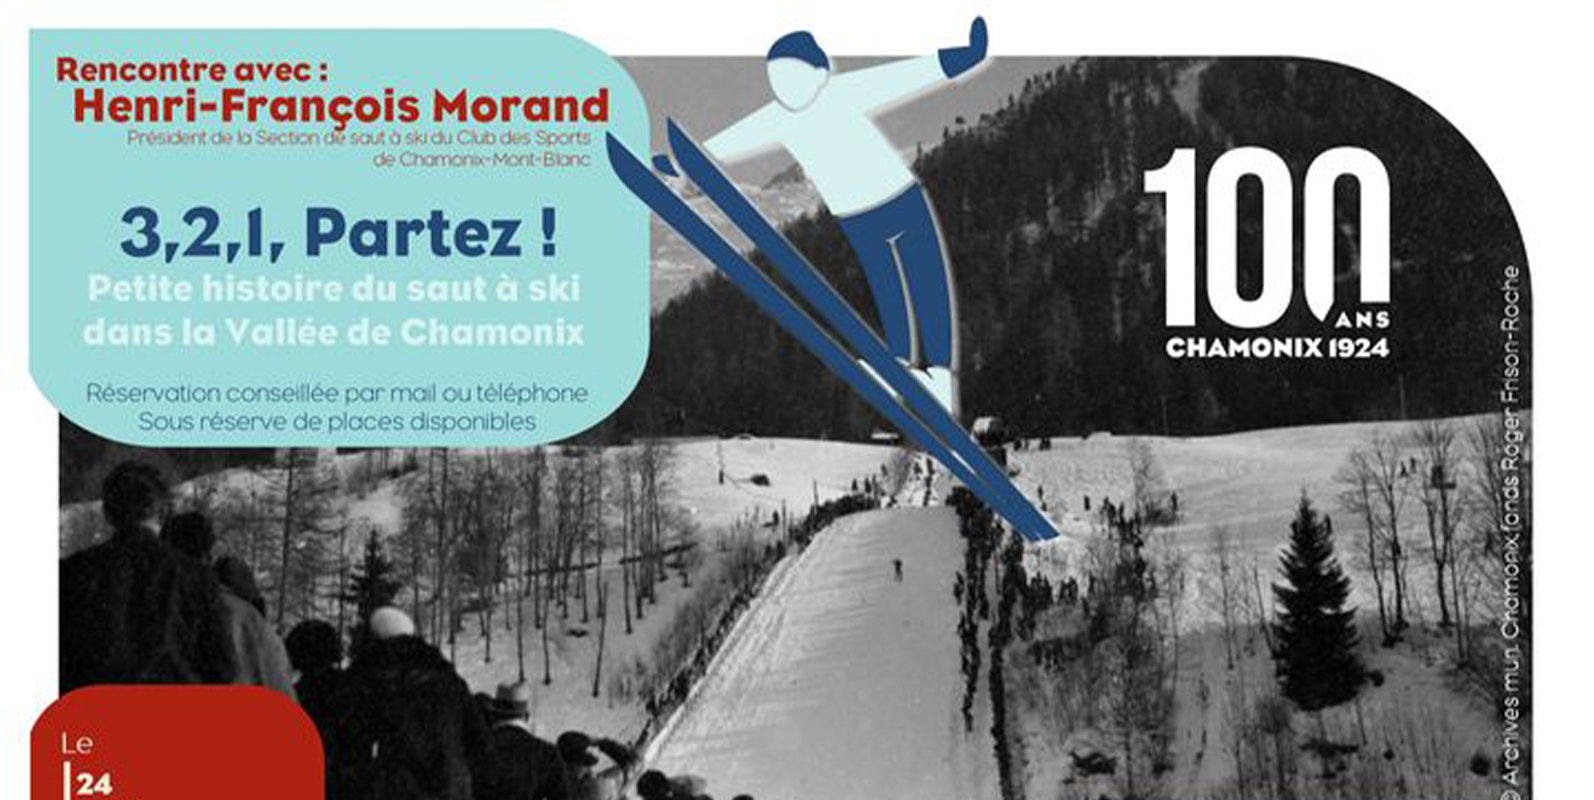 3,2,1, Partez ! Petite histoire du saut à ski dans la Vallée de Chamonix-Mont-Blanc